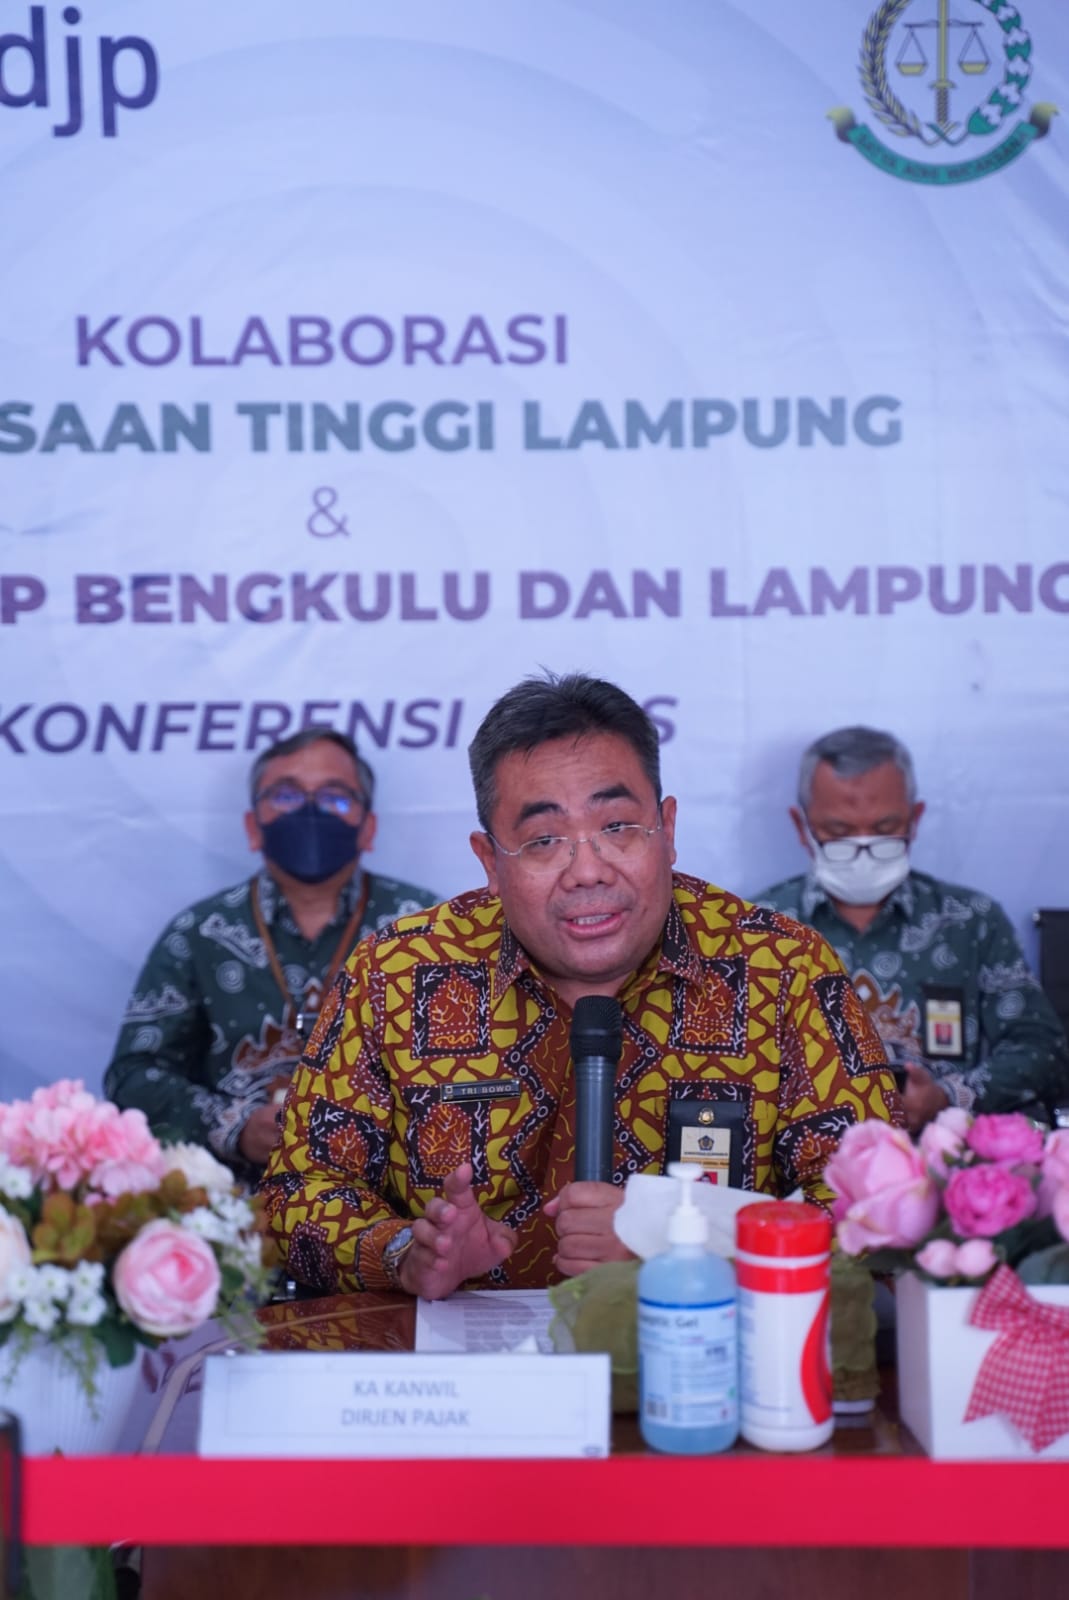 Kejati dan DJP Bengkulu-Lampung Berkolaborasi